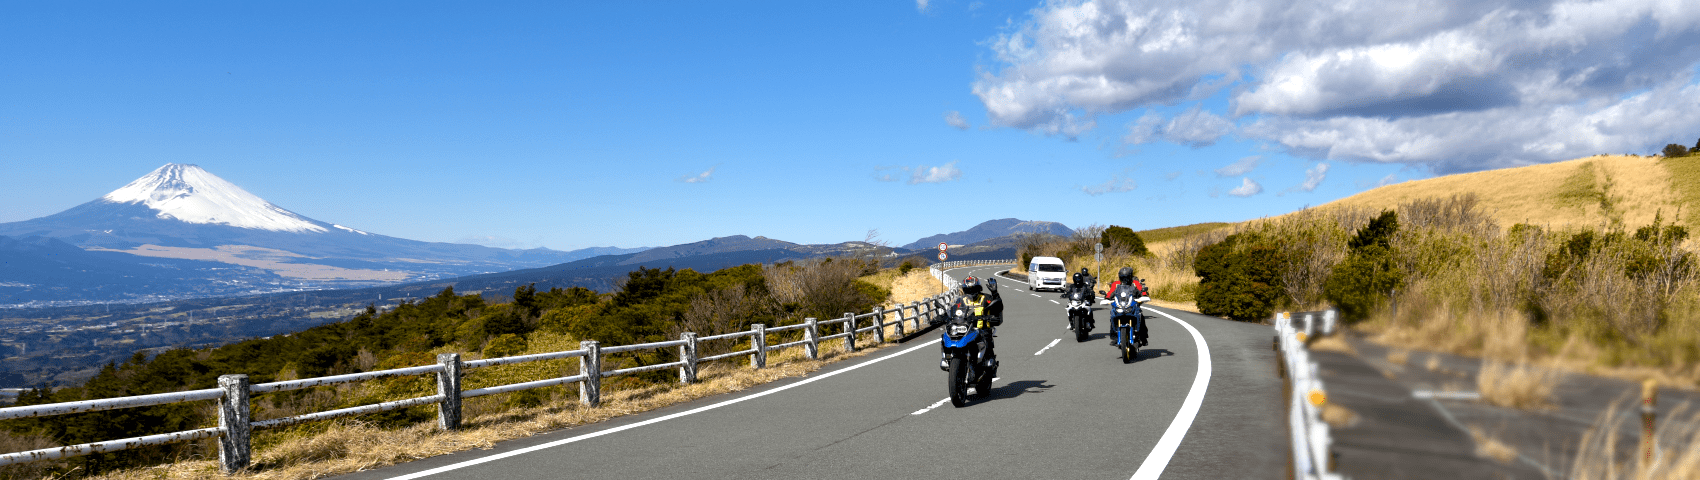 関東圏レンタルバイクを活用したインバウンド誘客事業